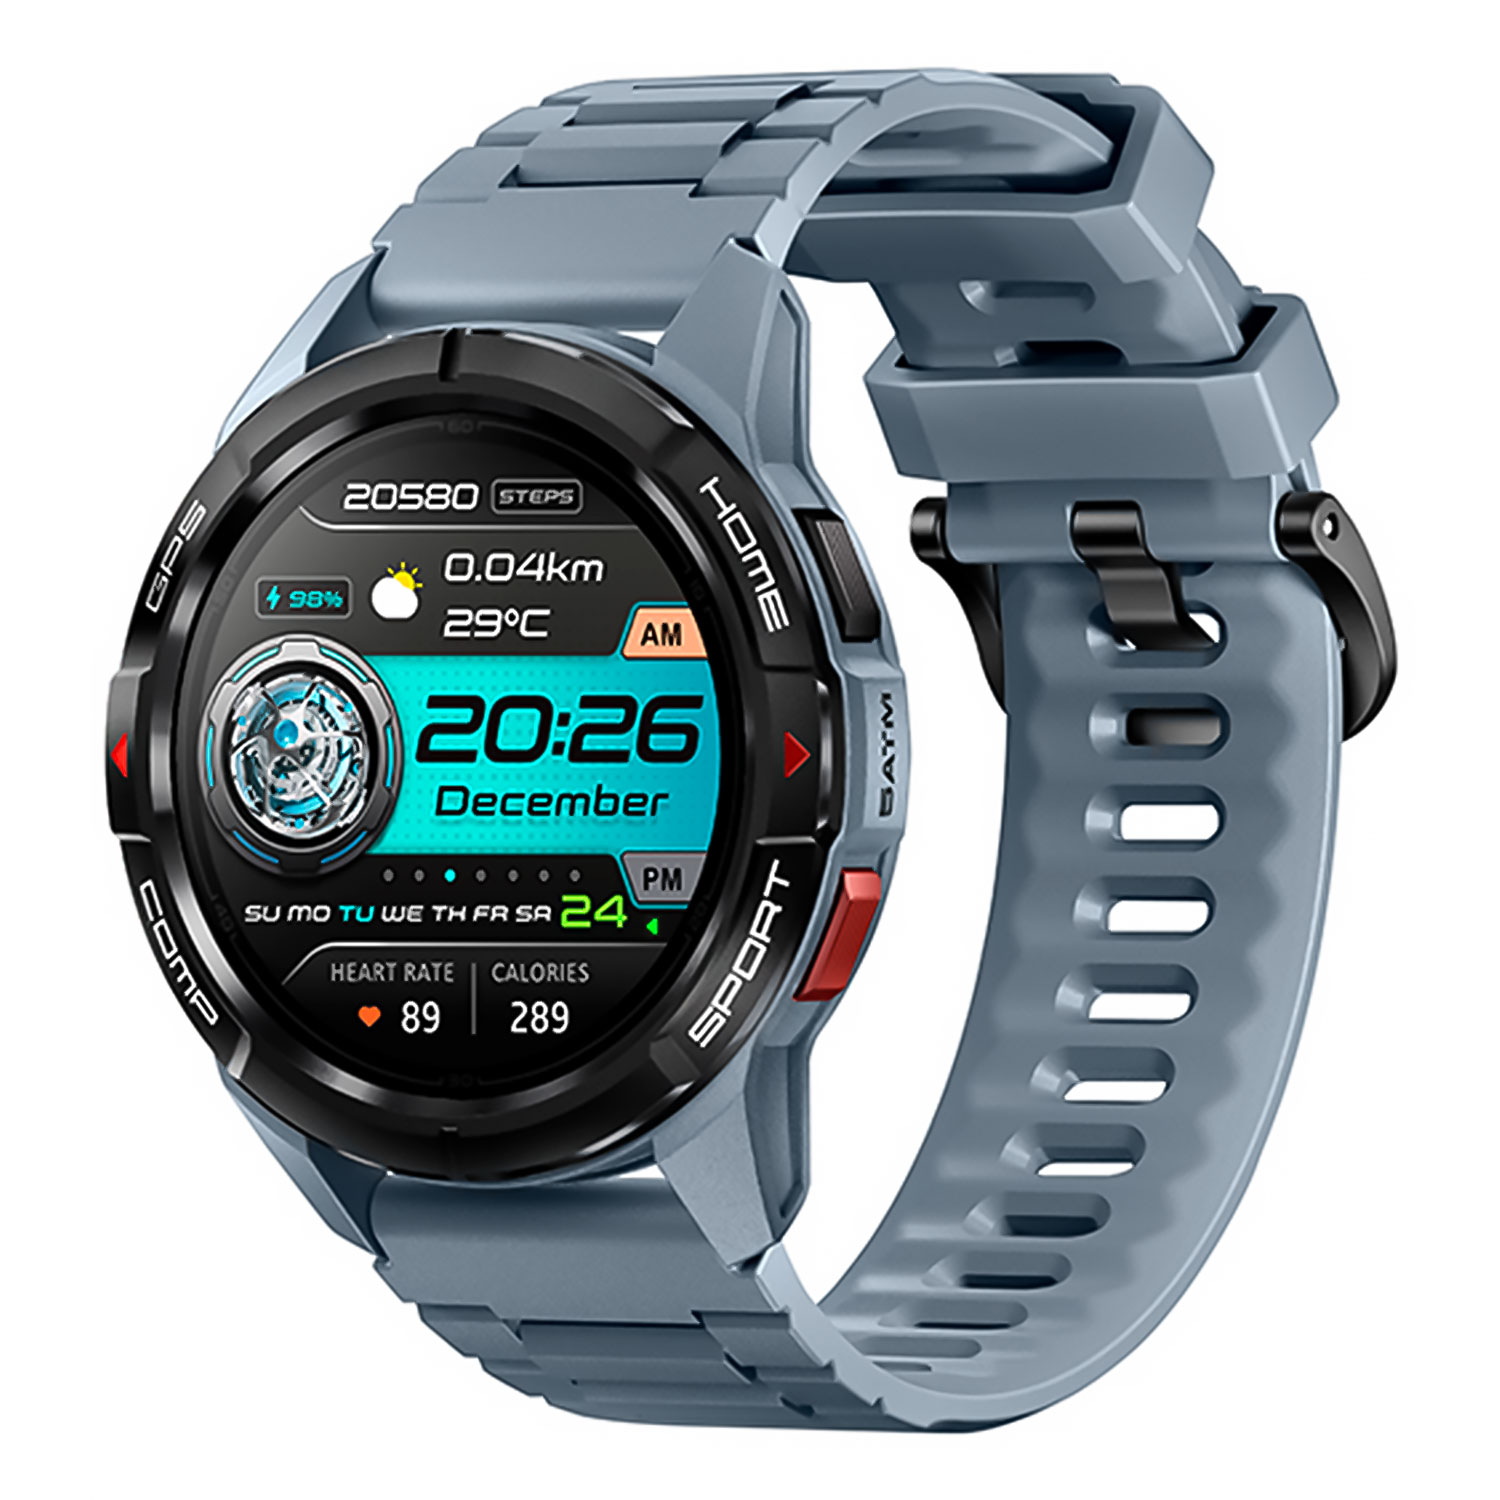 Smartwatch Mibro GS Active XPAW016 - Cinza